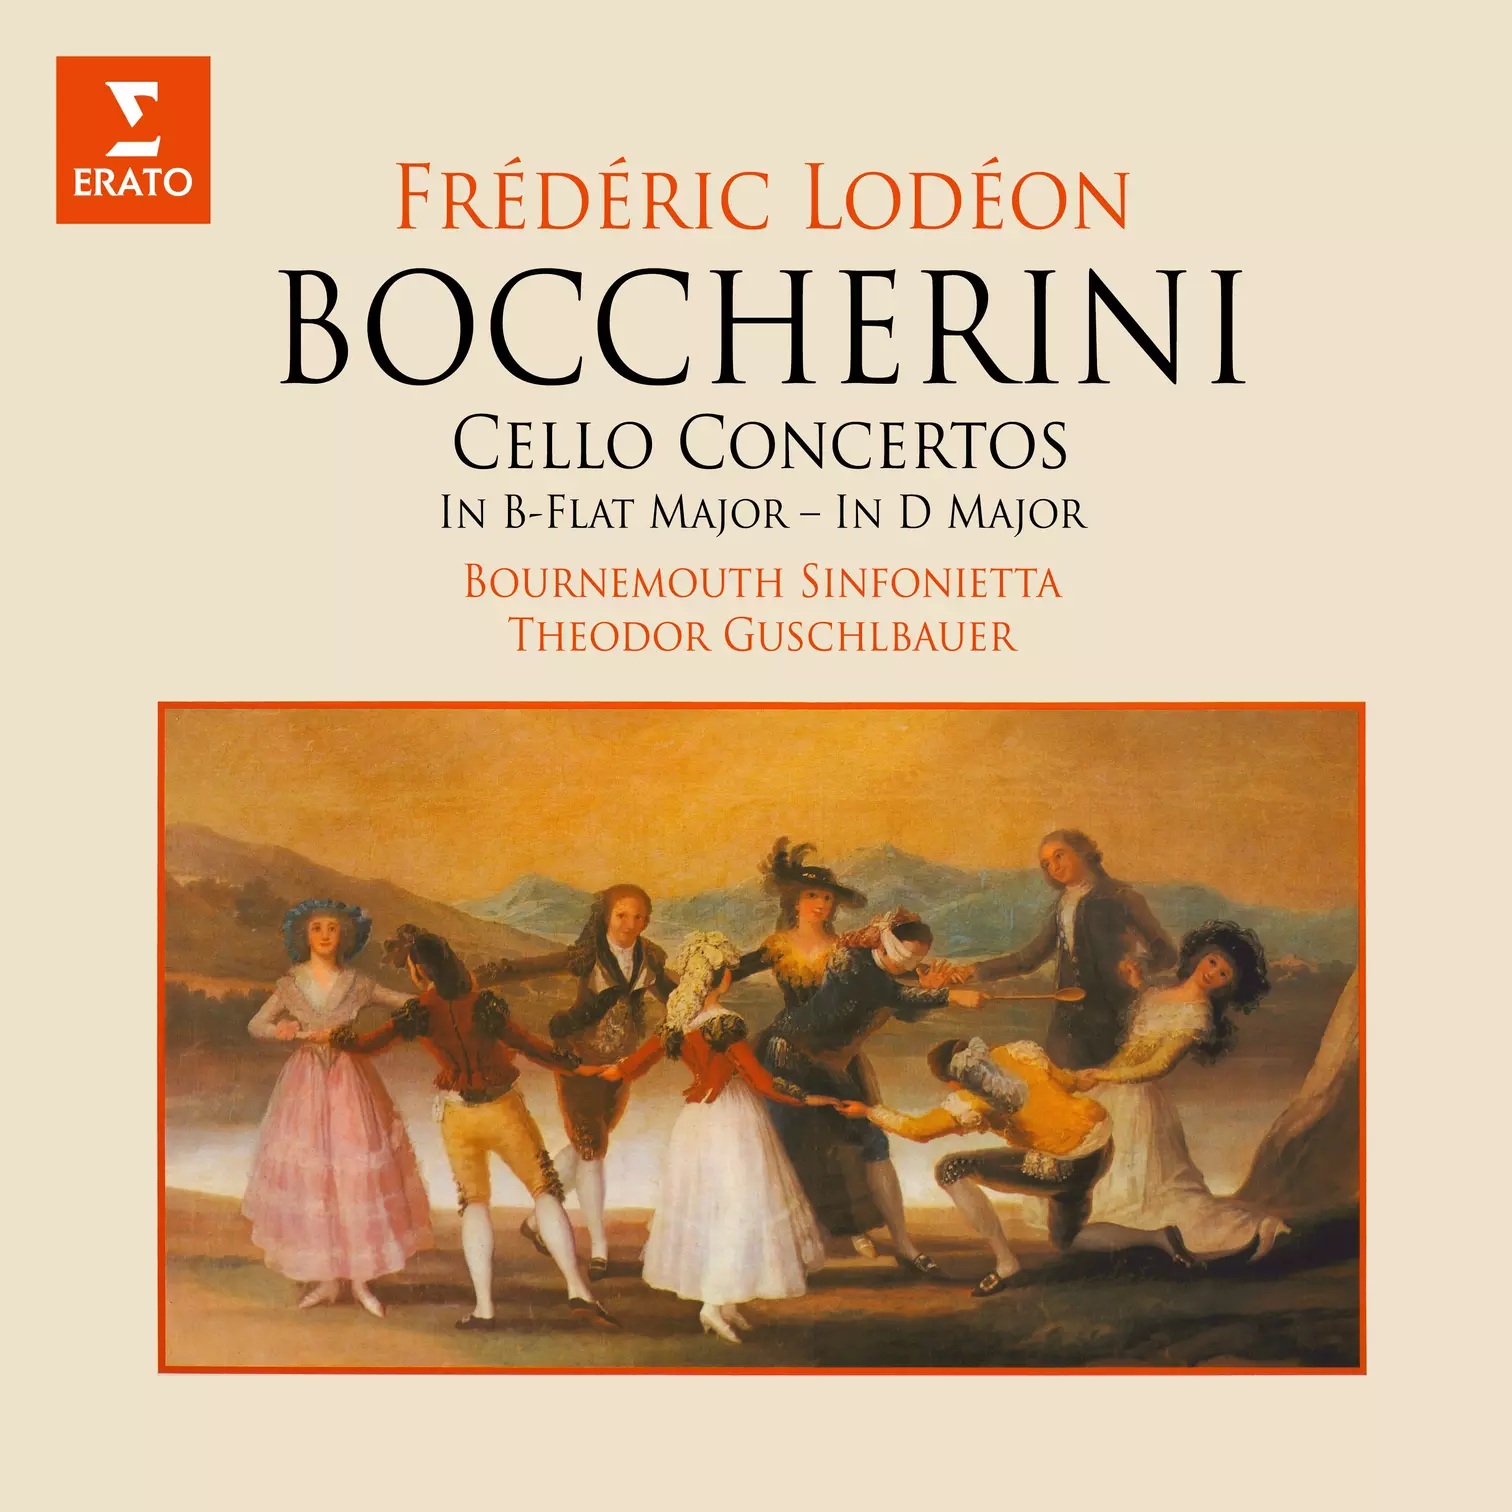 Boccherini: Cello Concertos, G. 482 & 483